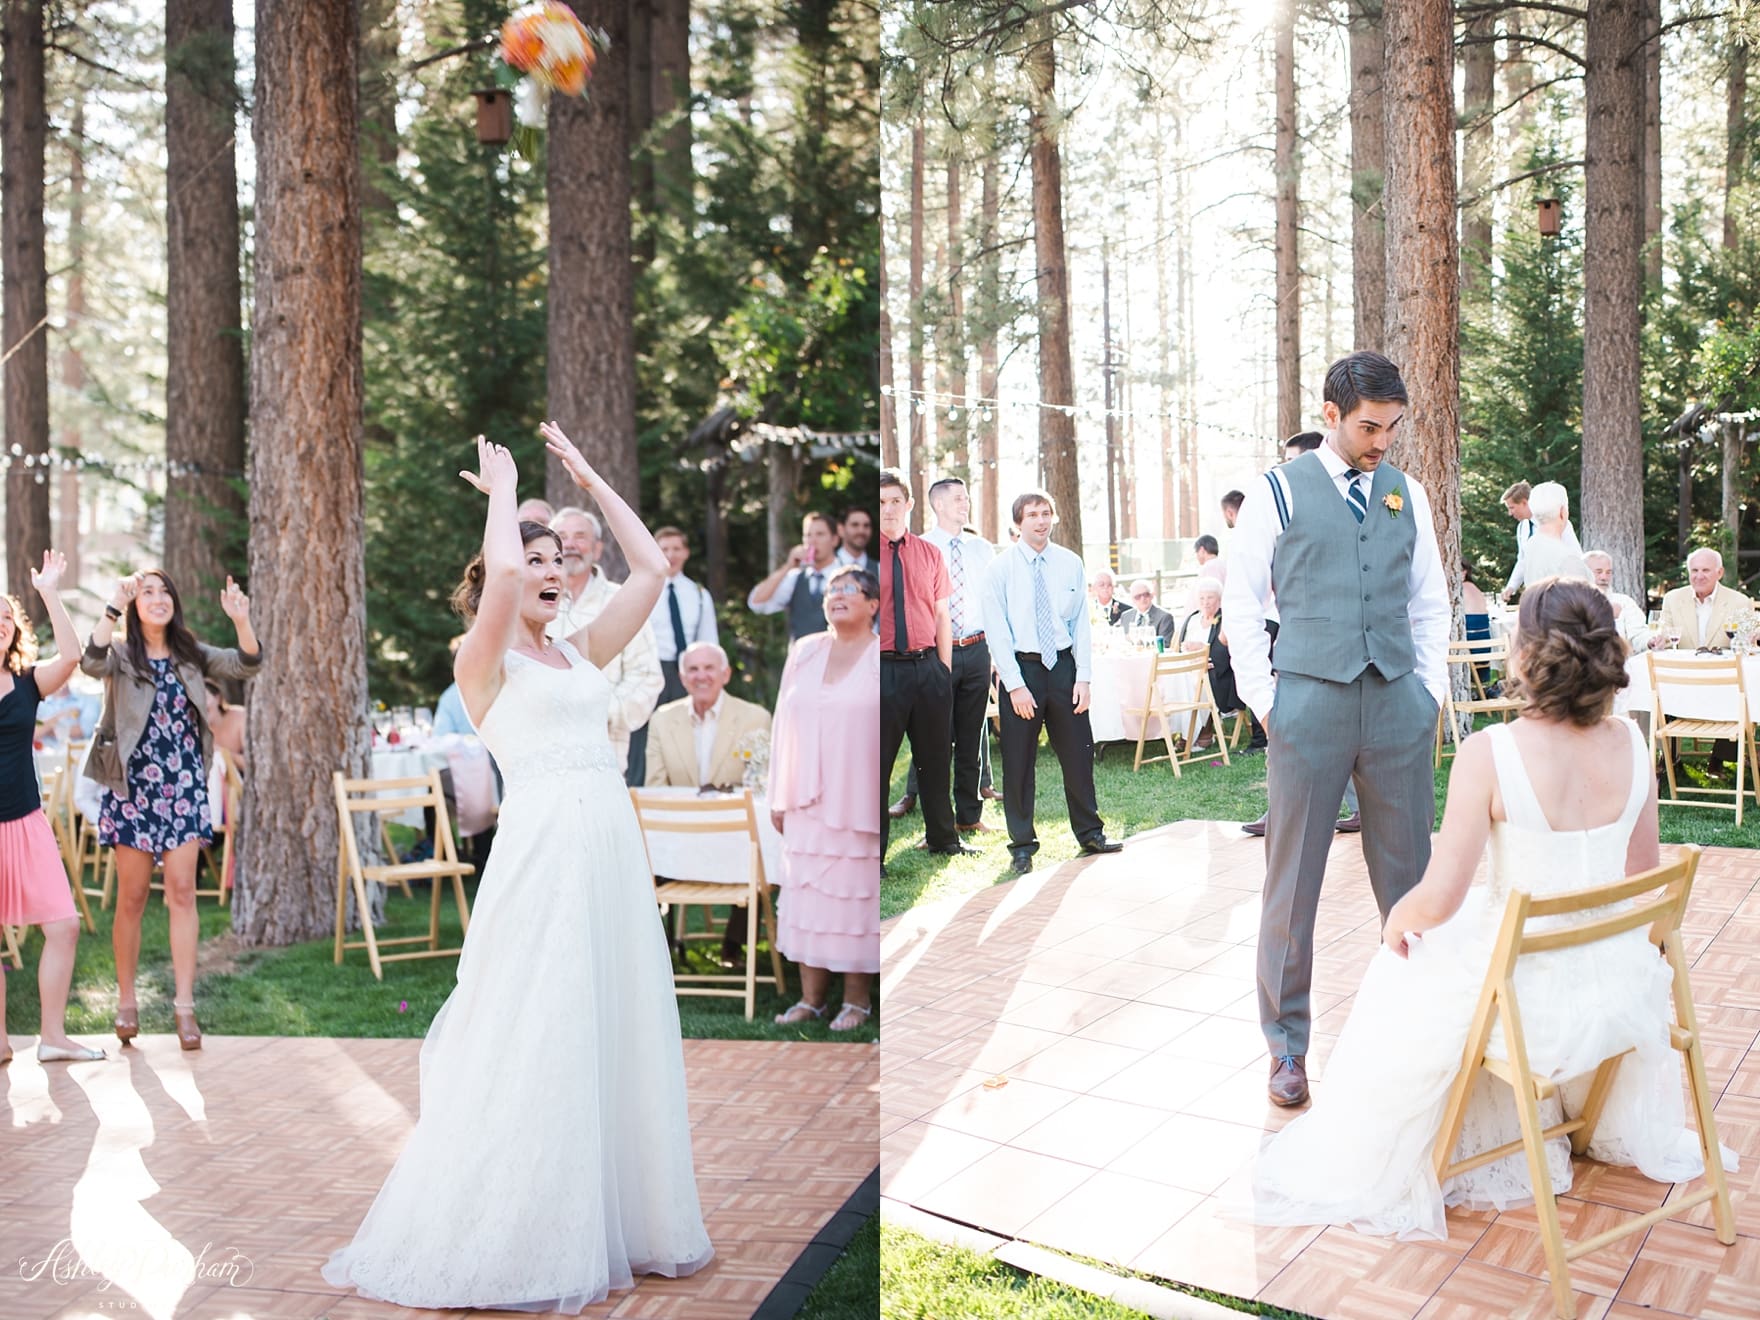 Inn at Fawnskin Wedding, Fawnksin Wedding, Big Bear Lake Wedding, bouquet toss, garter toss, classy tosses for weddings